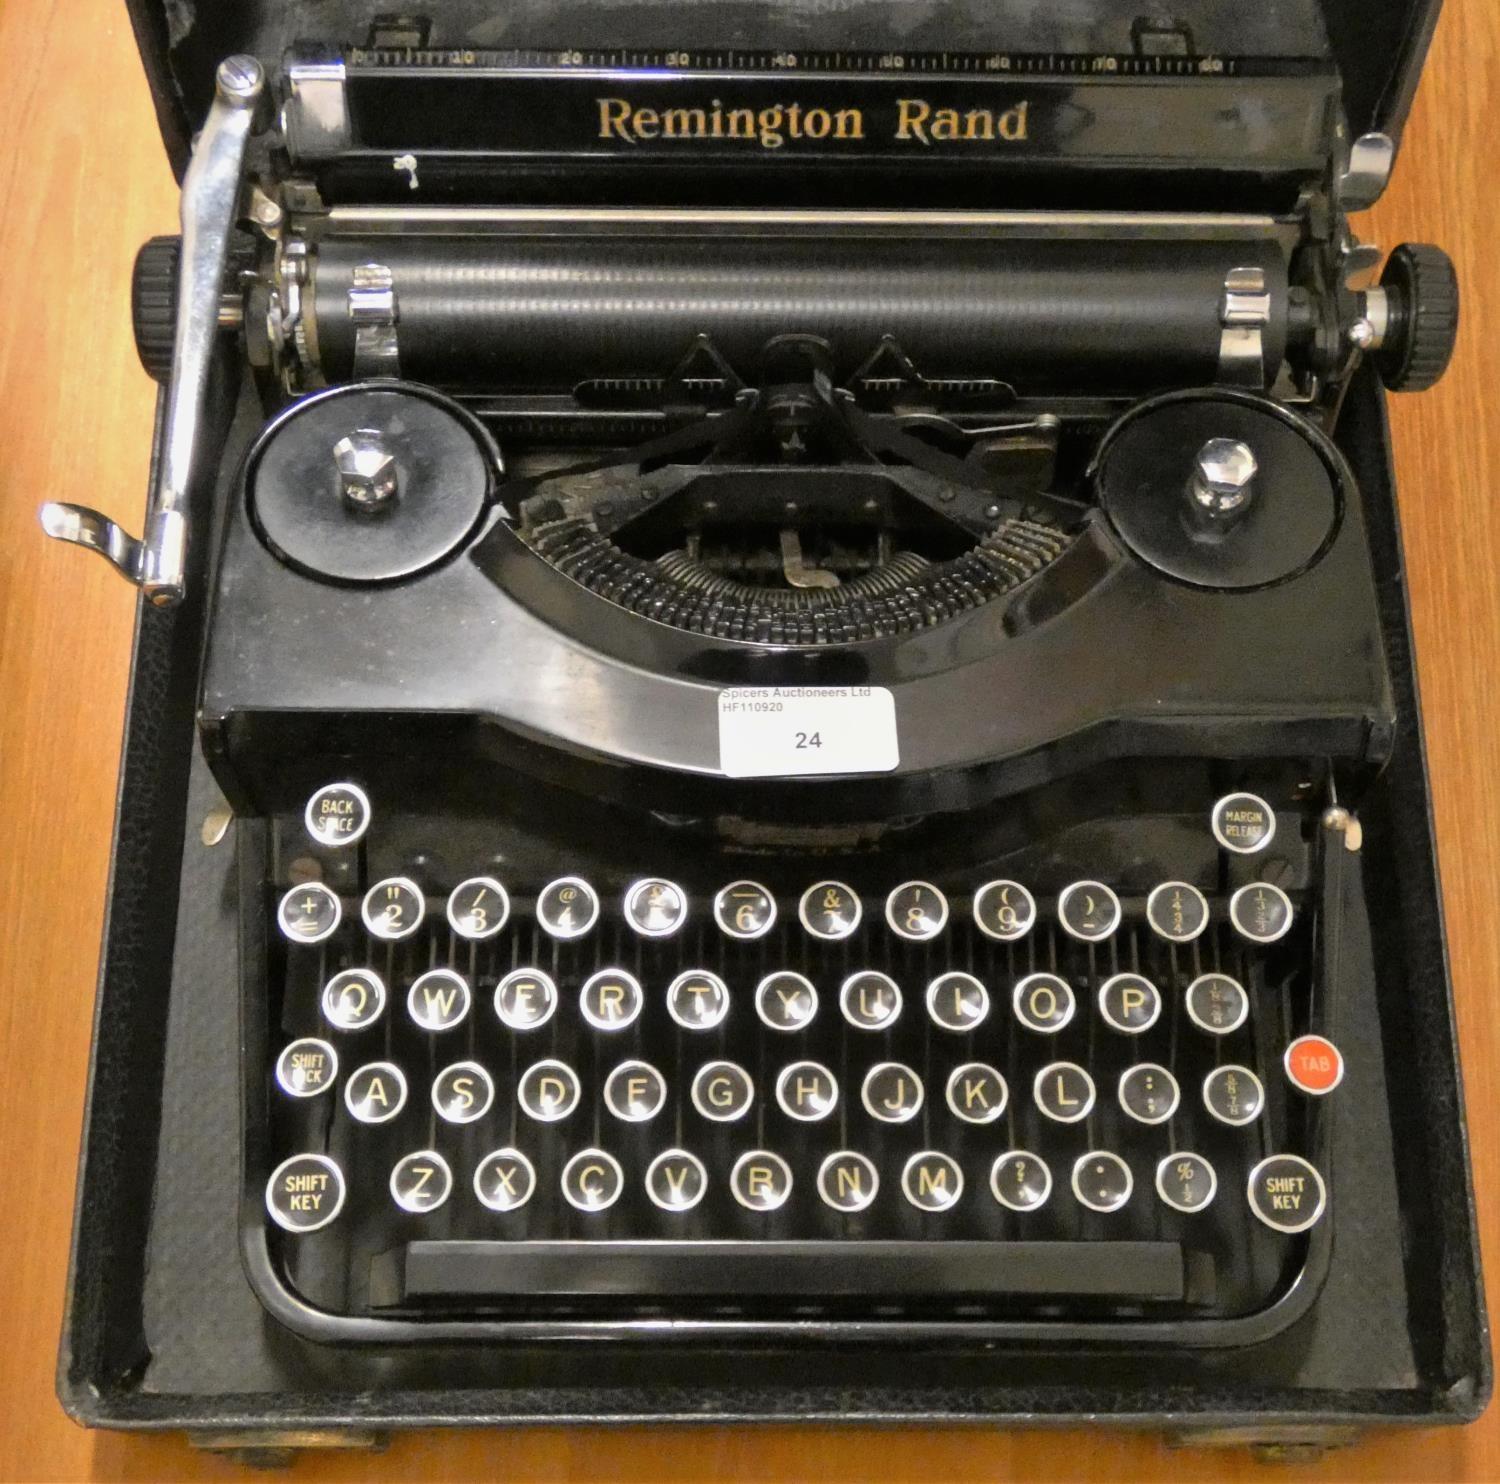 A Remington Rand model 1 typewriter, case. - Image 2 of 2